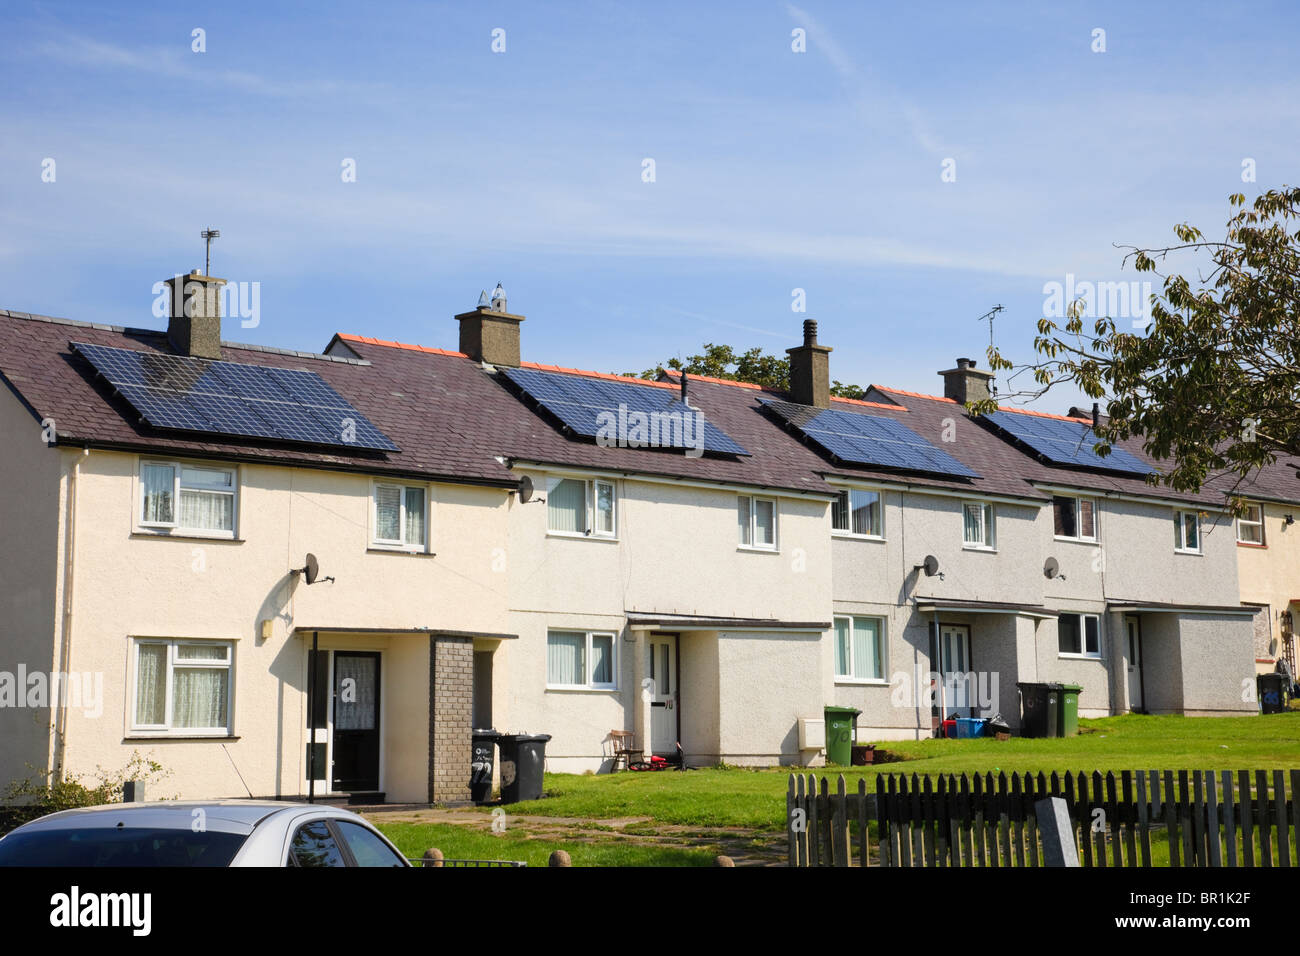 Rangée de maisons mitoyennes urbaines avec des panneaux solaires sur le toit dans un quartier résidentiel immobilier conseil rue. Llangefni Isle of Anglesey au nord du Pays de Galles UK Banque D'Images